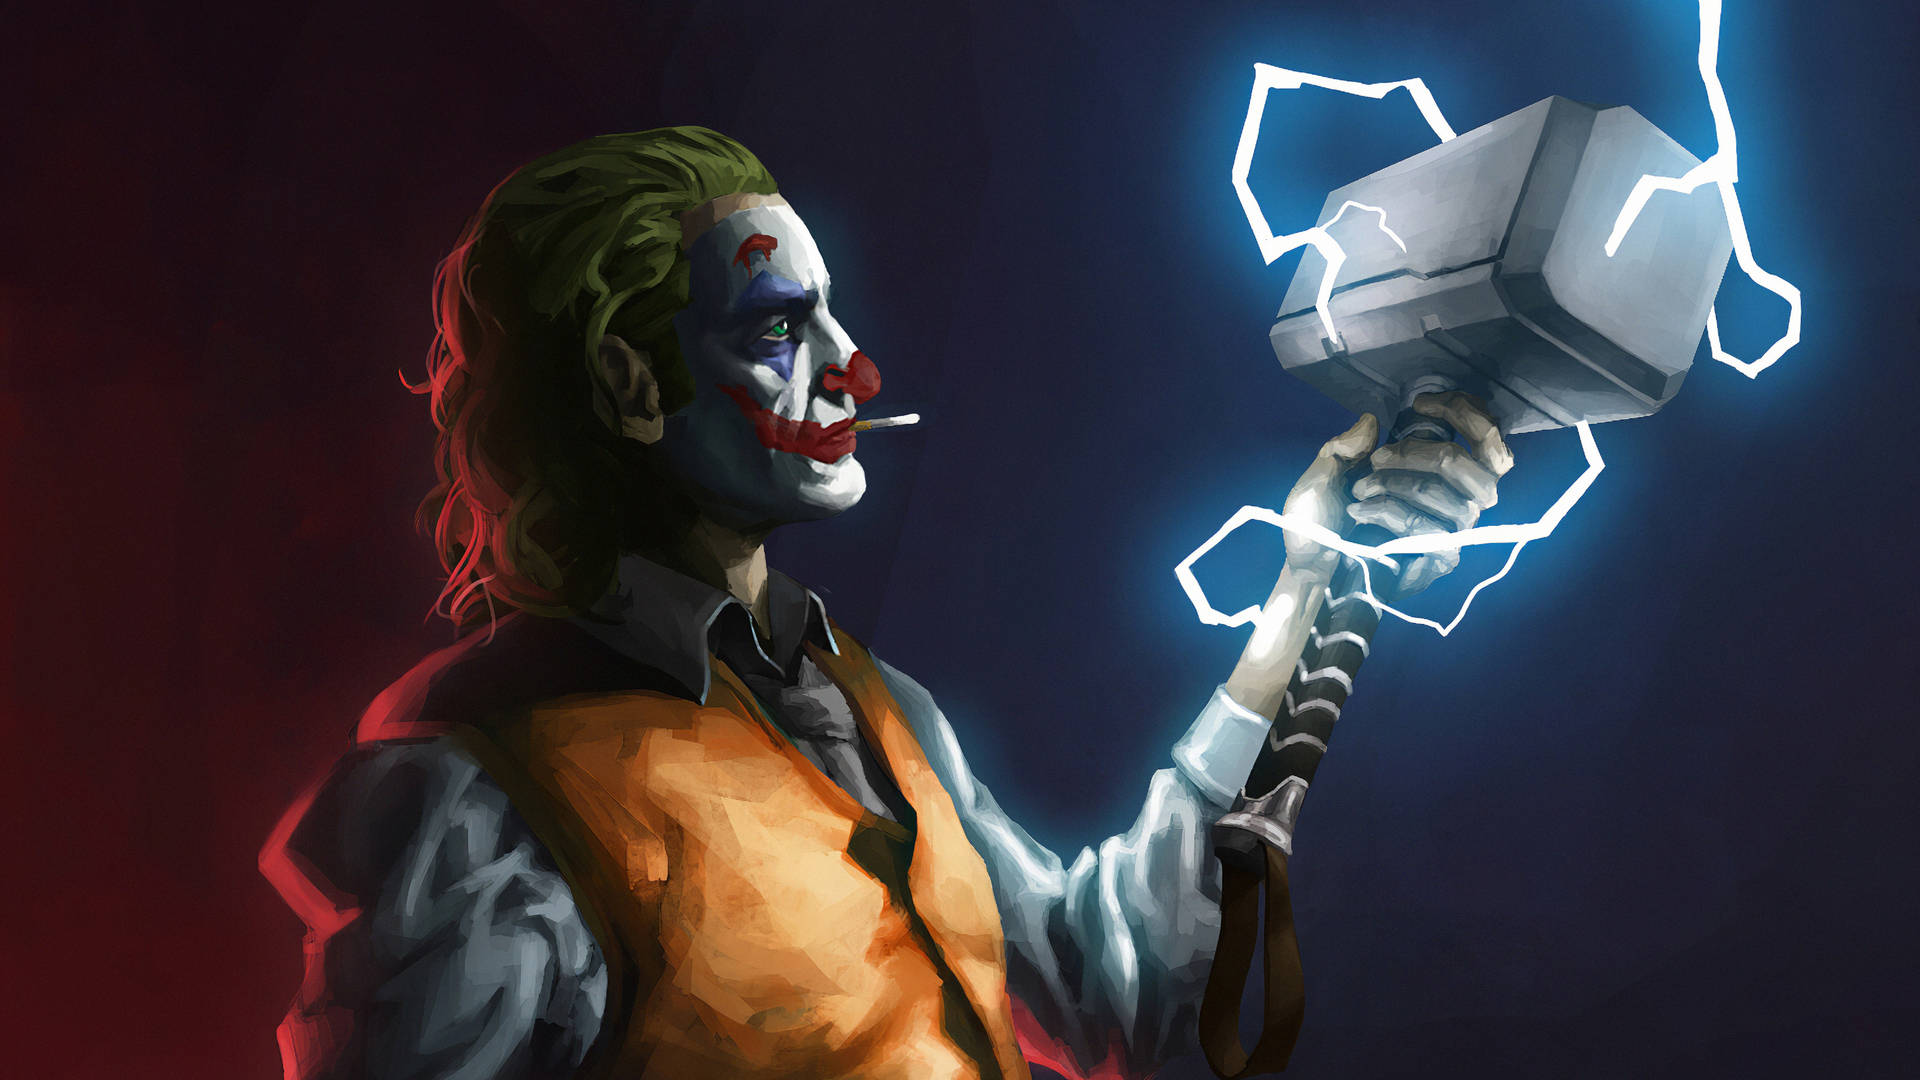 Joker Thor hammer art wallpaper